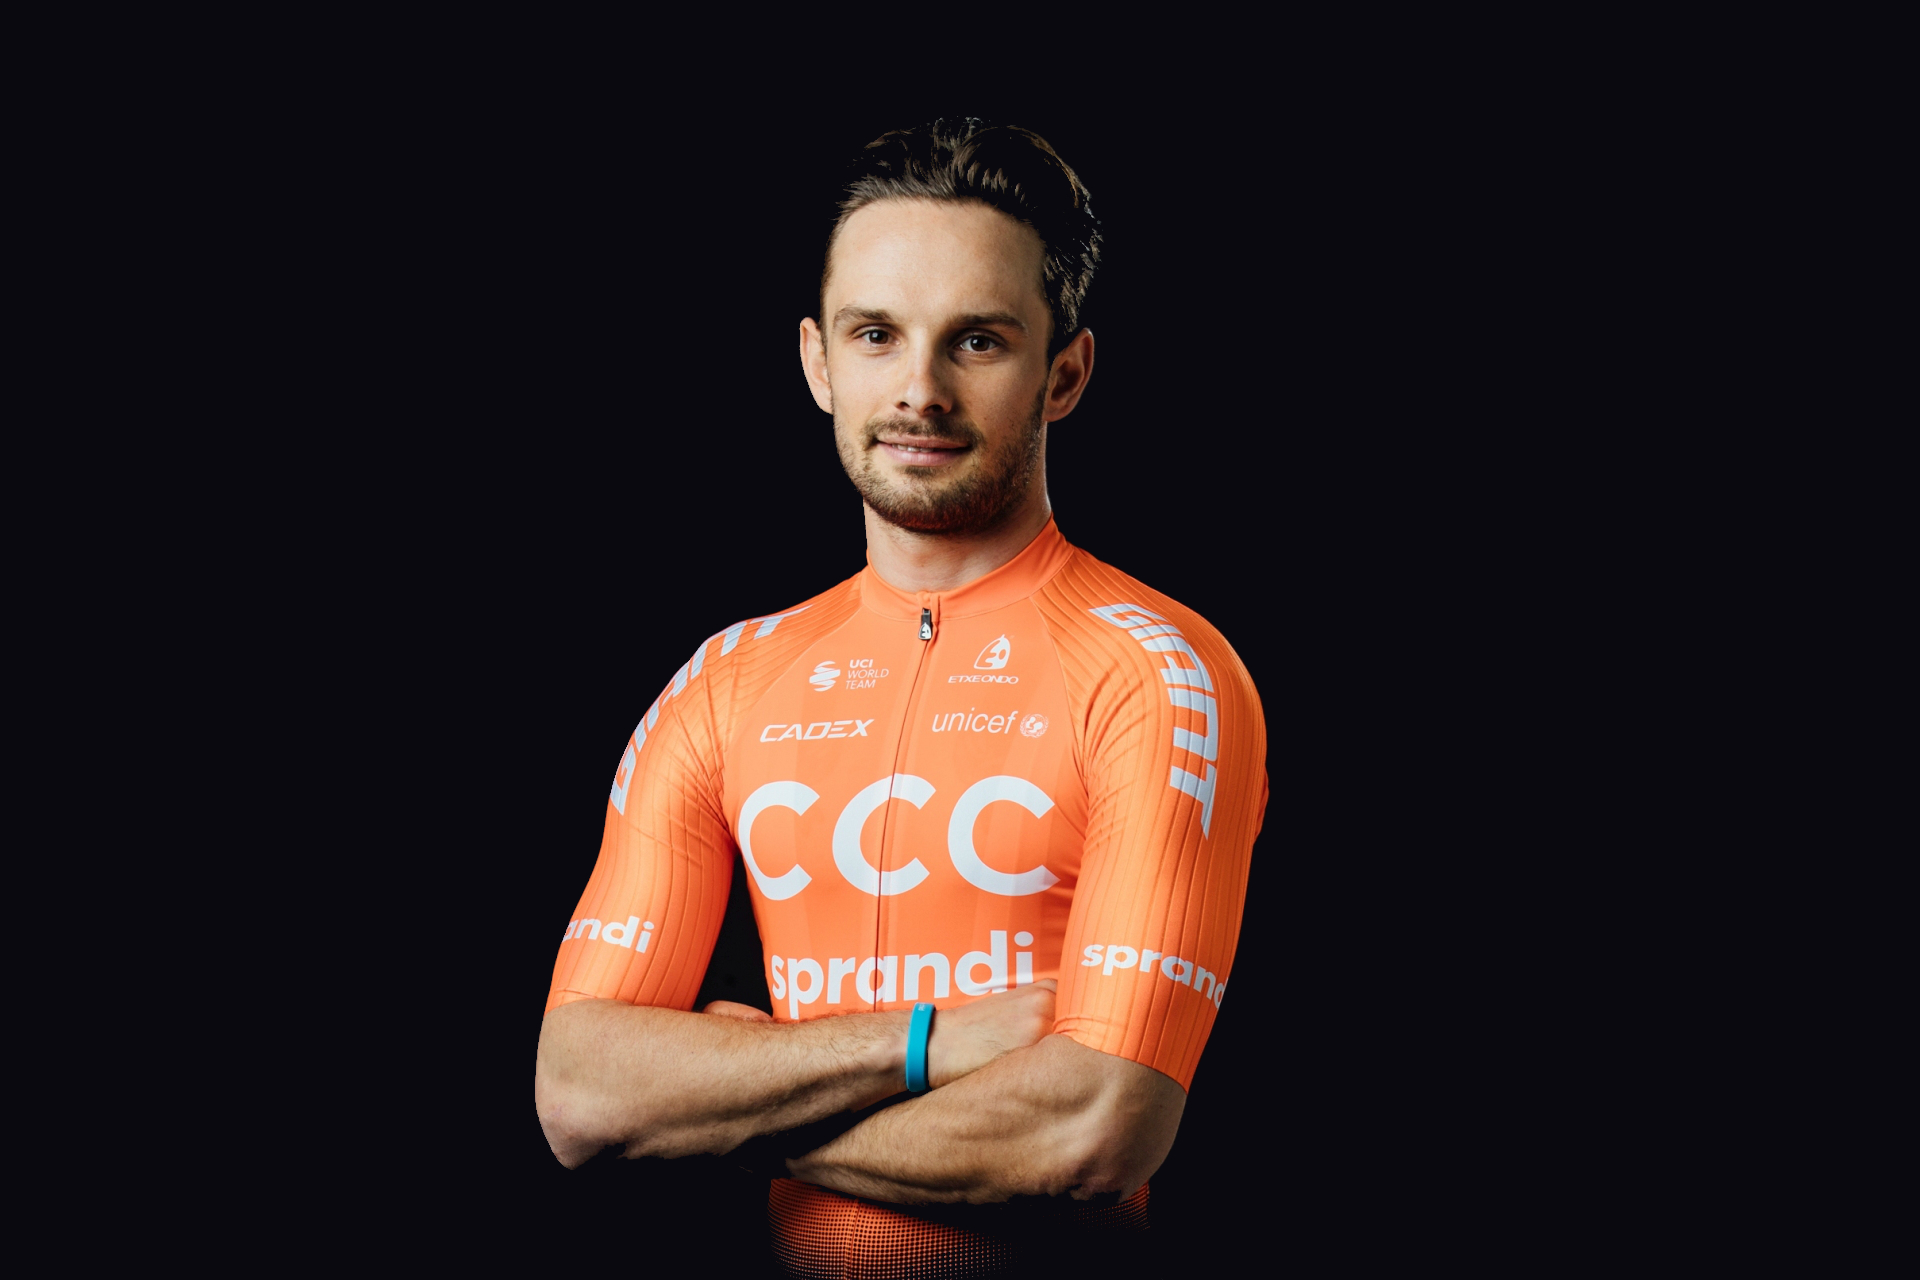 Tour de Hongrie 2020: etap 3. Jakub Mareczko razy dwa